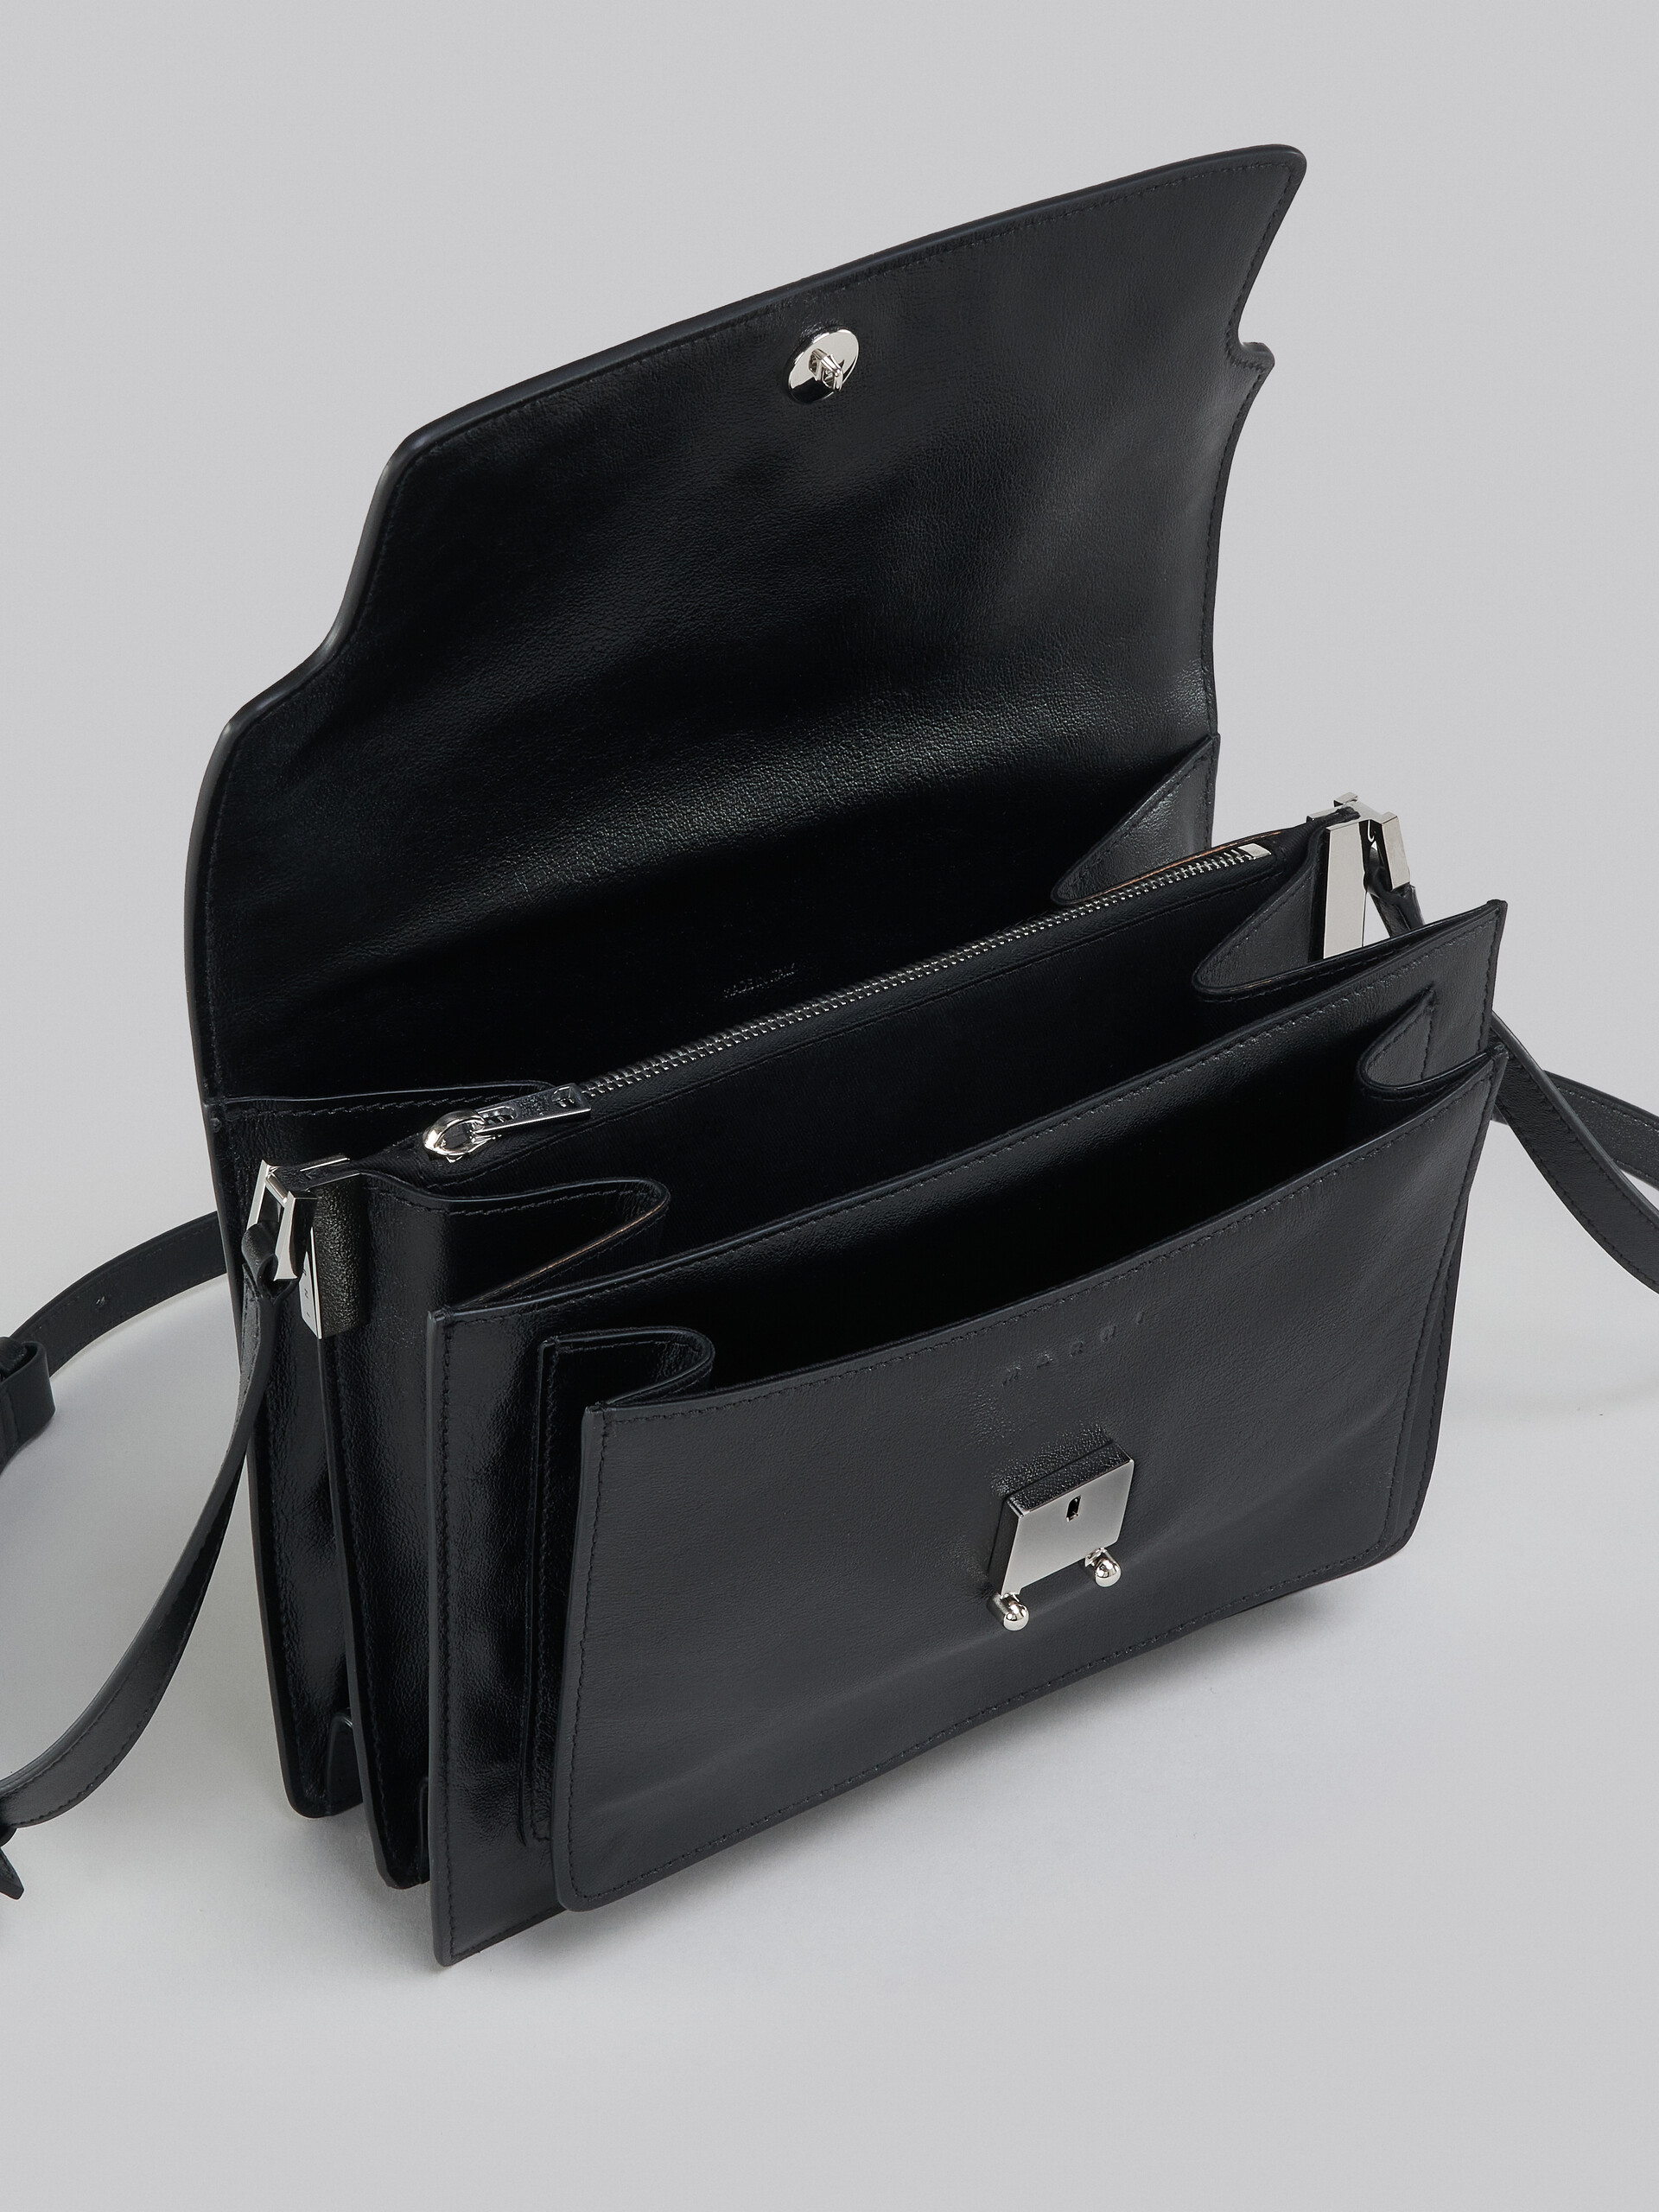 Trunk Soft Large Bag in black leather - Shoulder Bag - Image 4